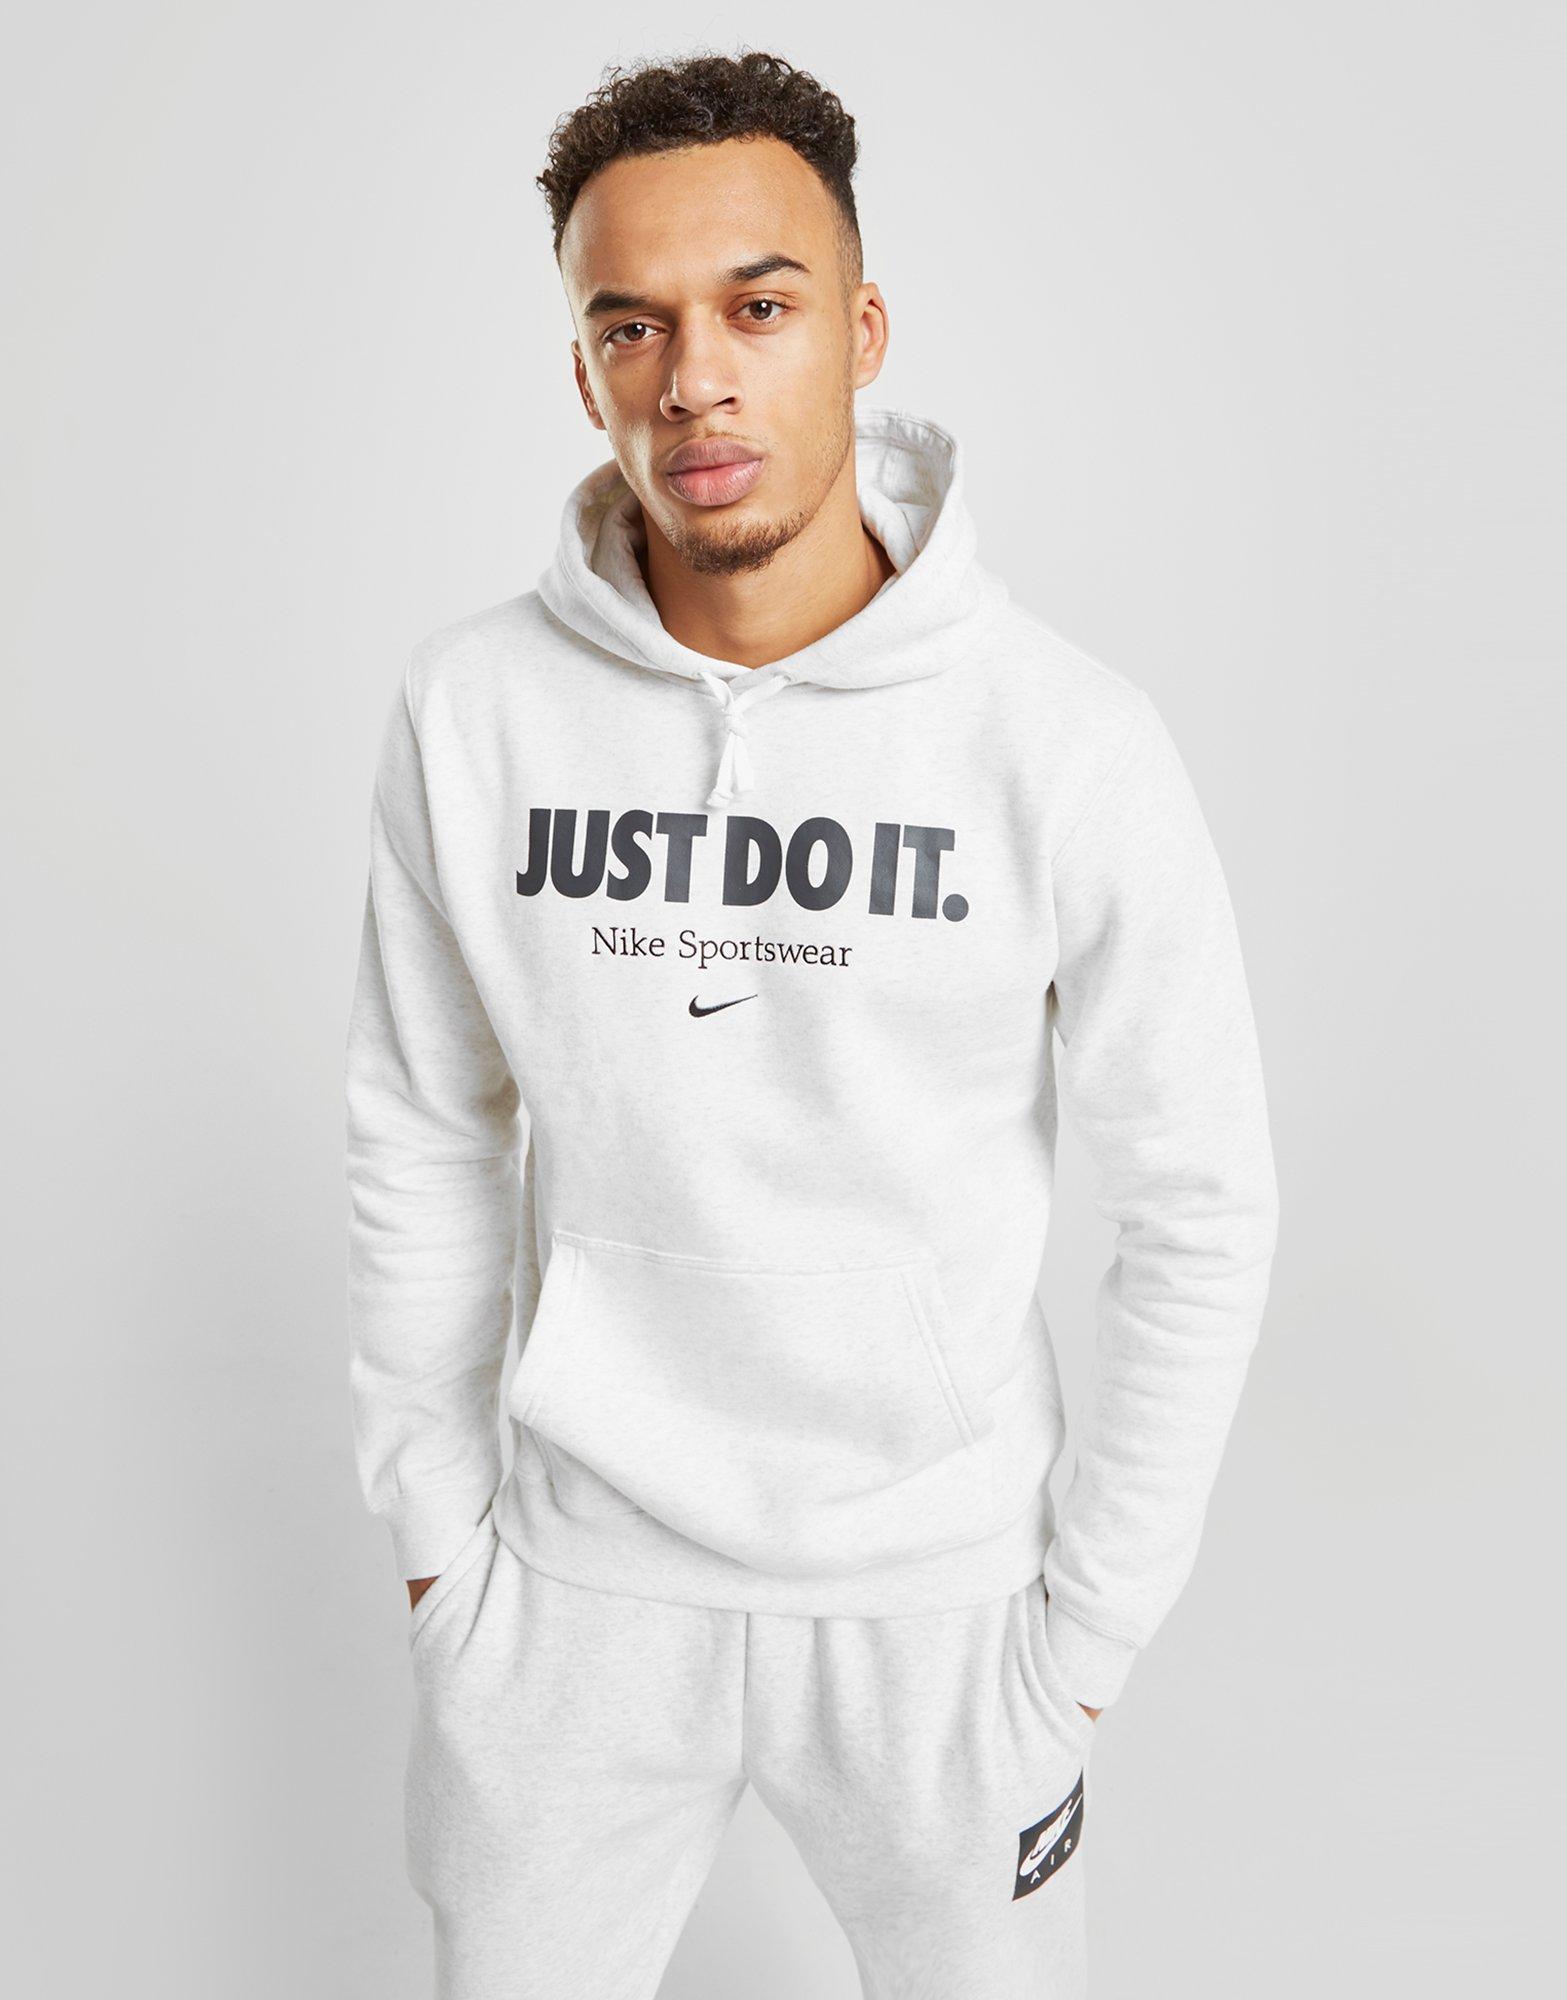 Nike Cotton Sportswear Just Do It Hoodie in Grey (Gray) for Men - Lyst